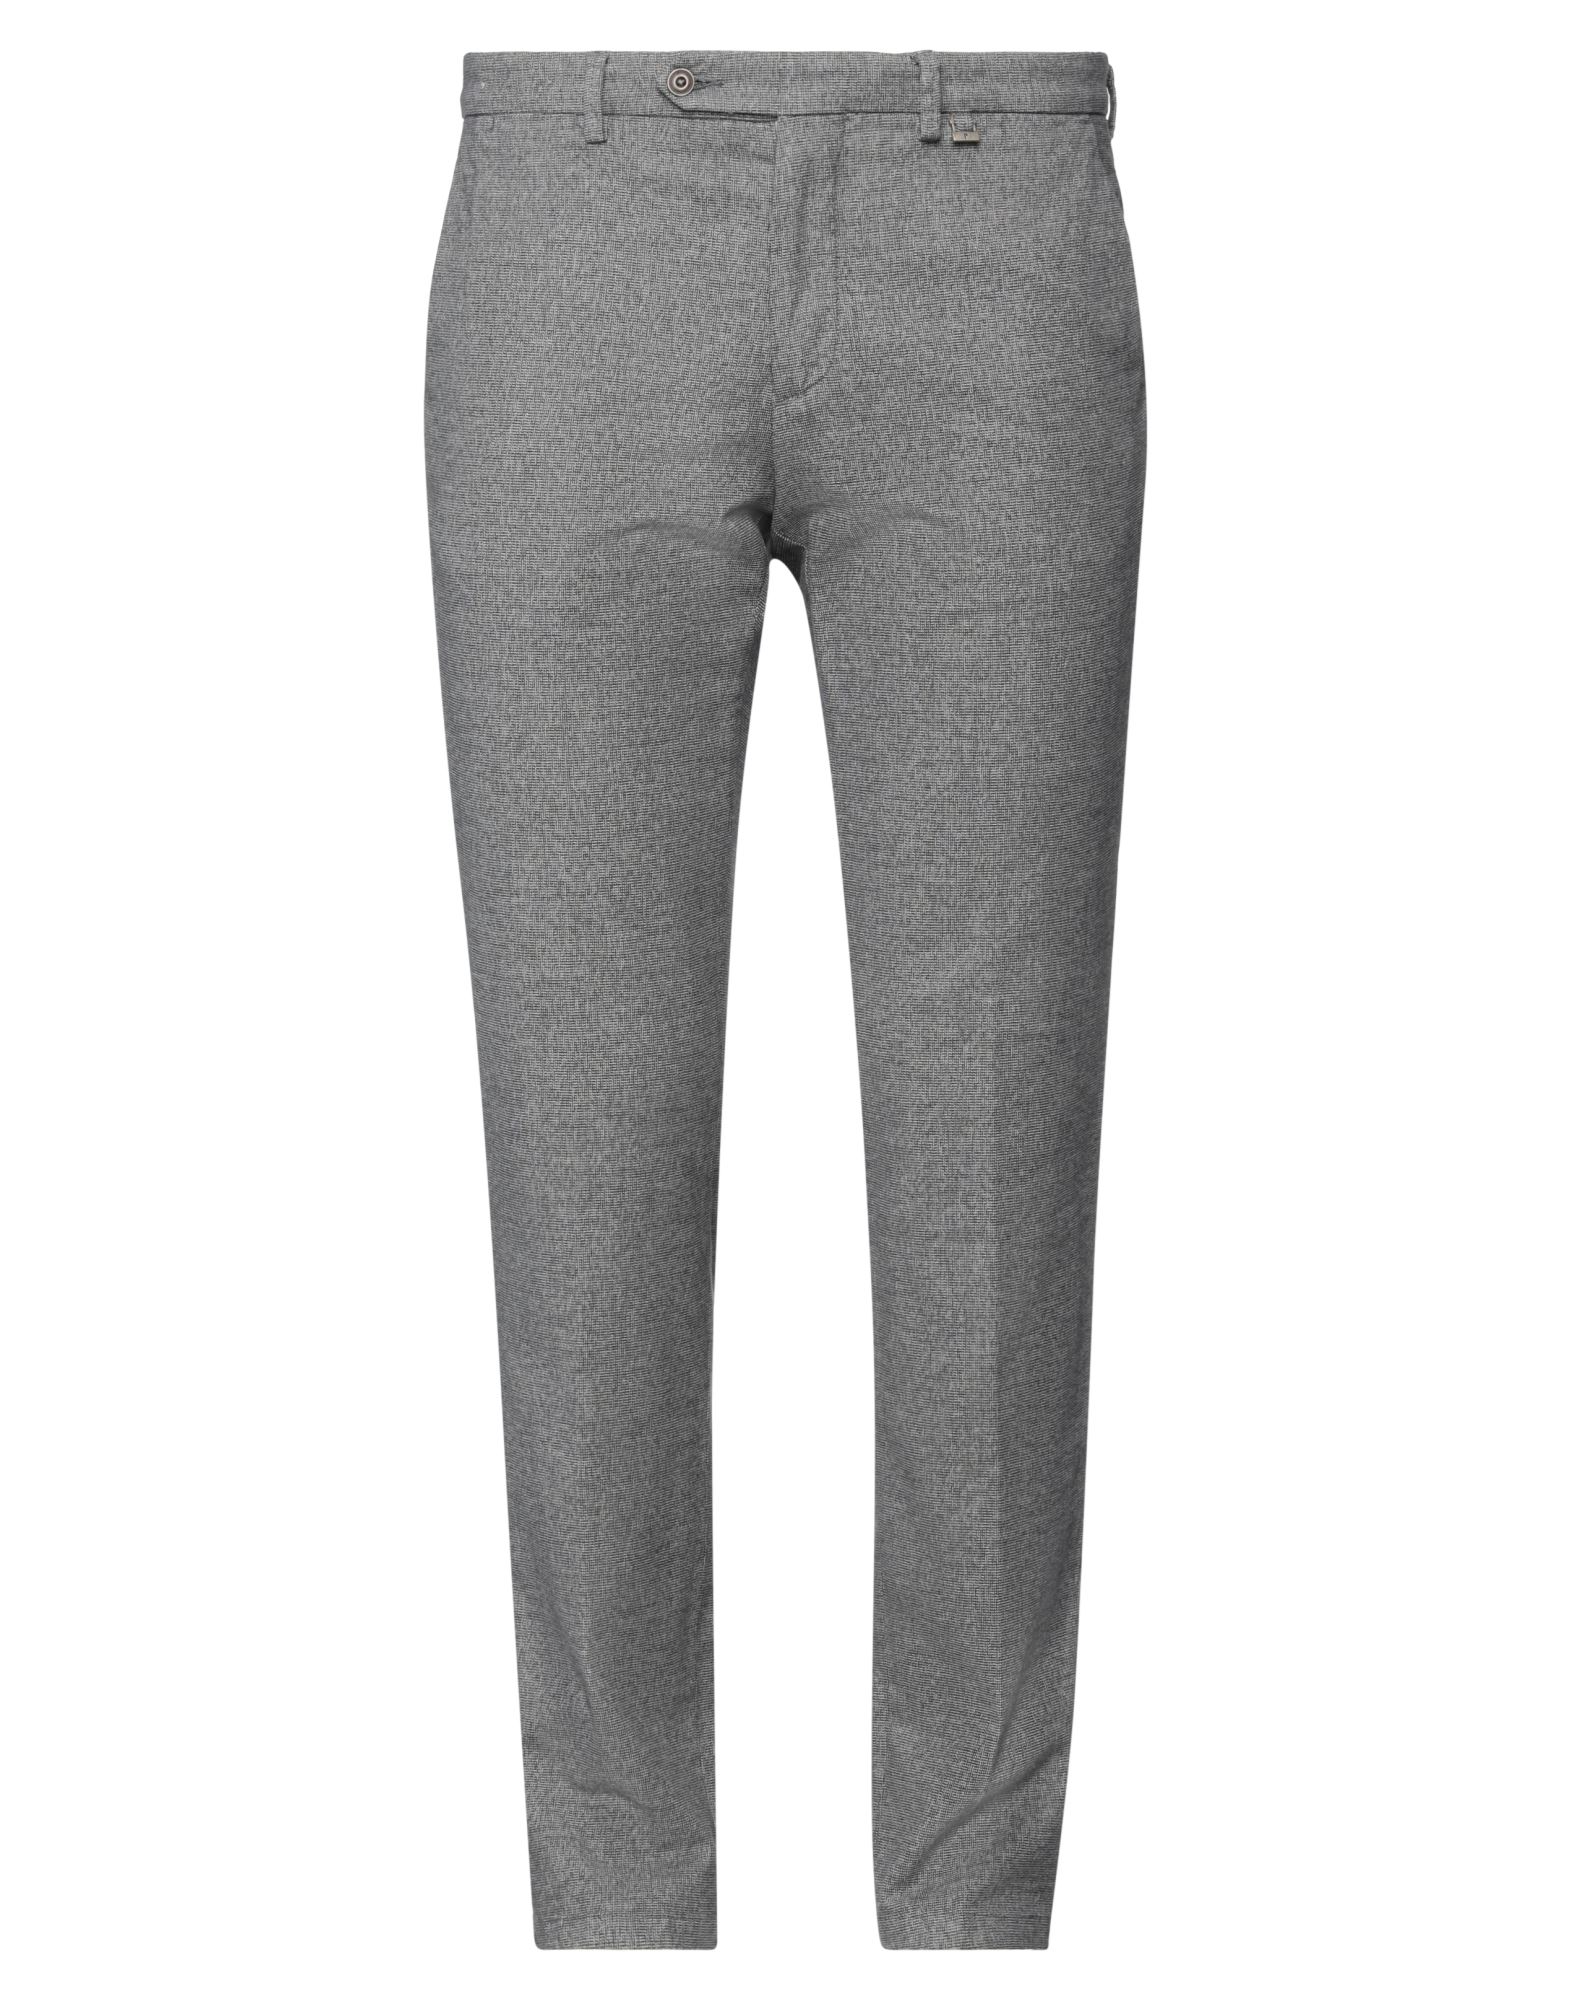 Paoloni Man Pants Grey Size 42 Cotton, Elastane